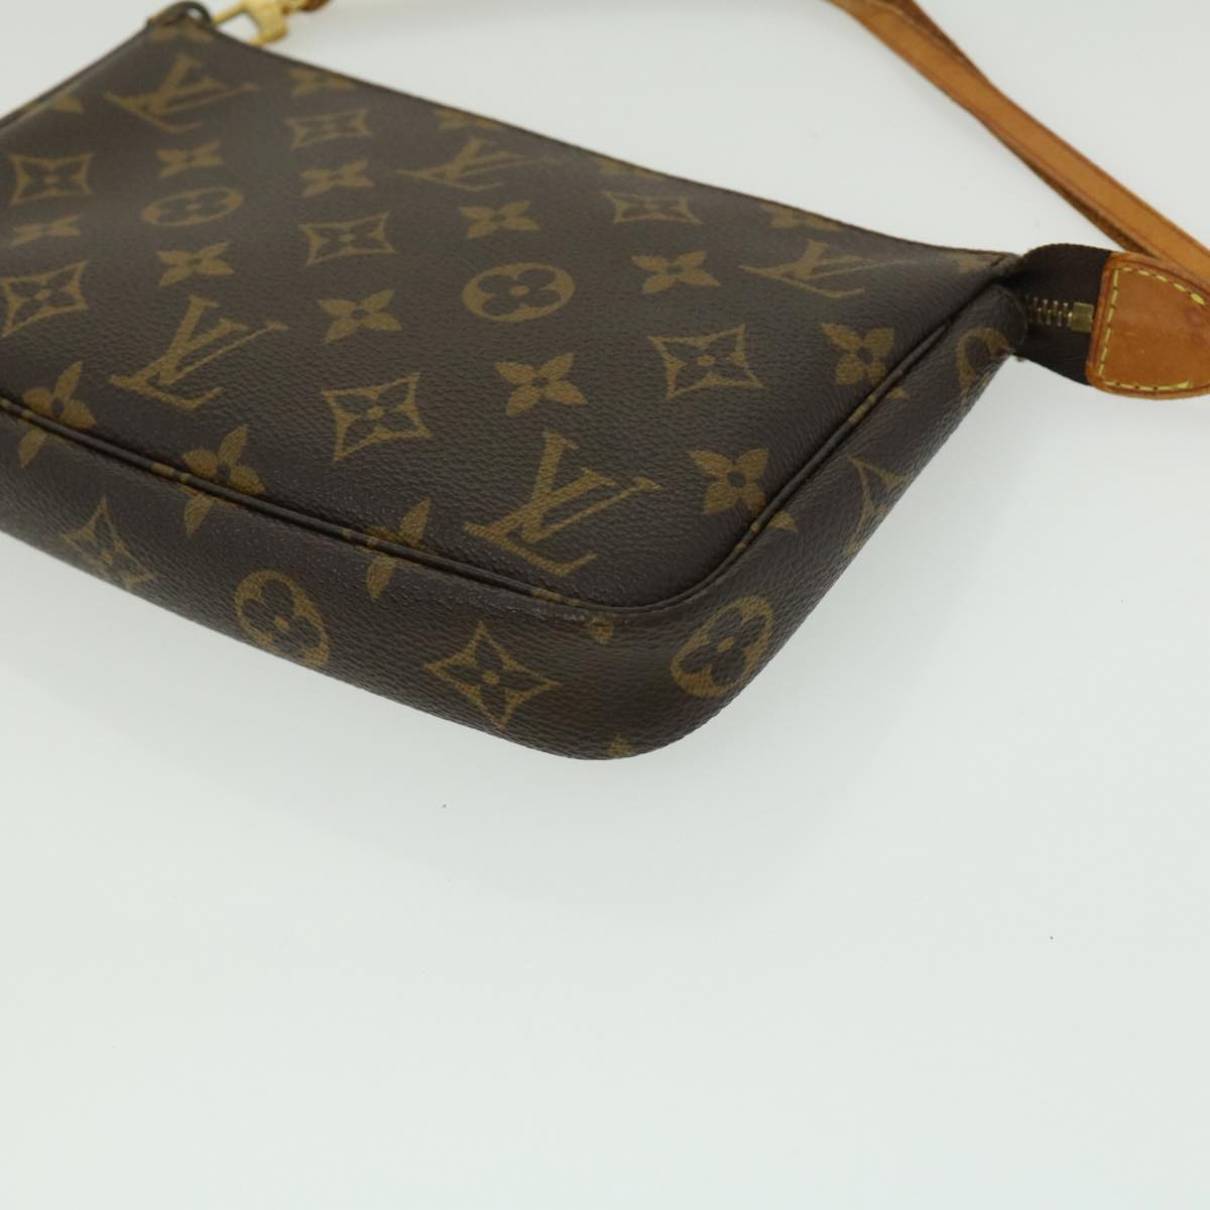 Cloth handbag Louis Vuitton